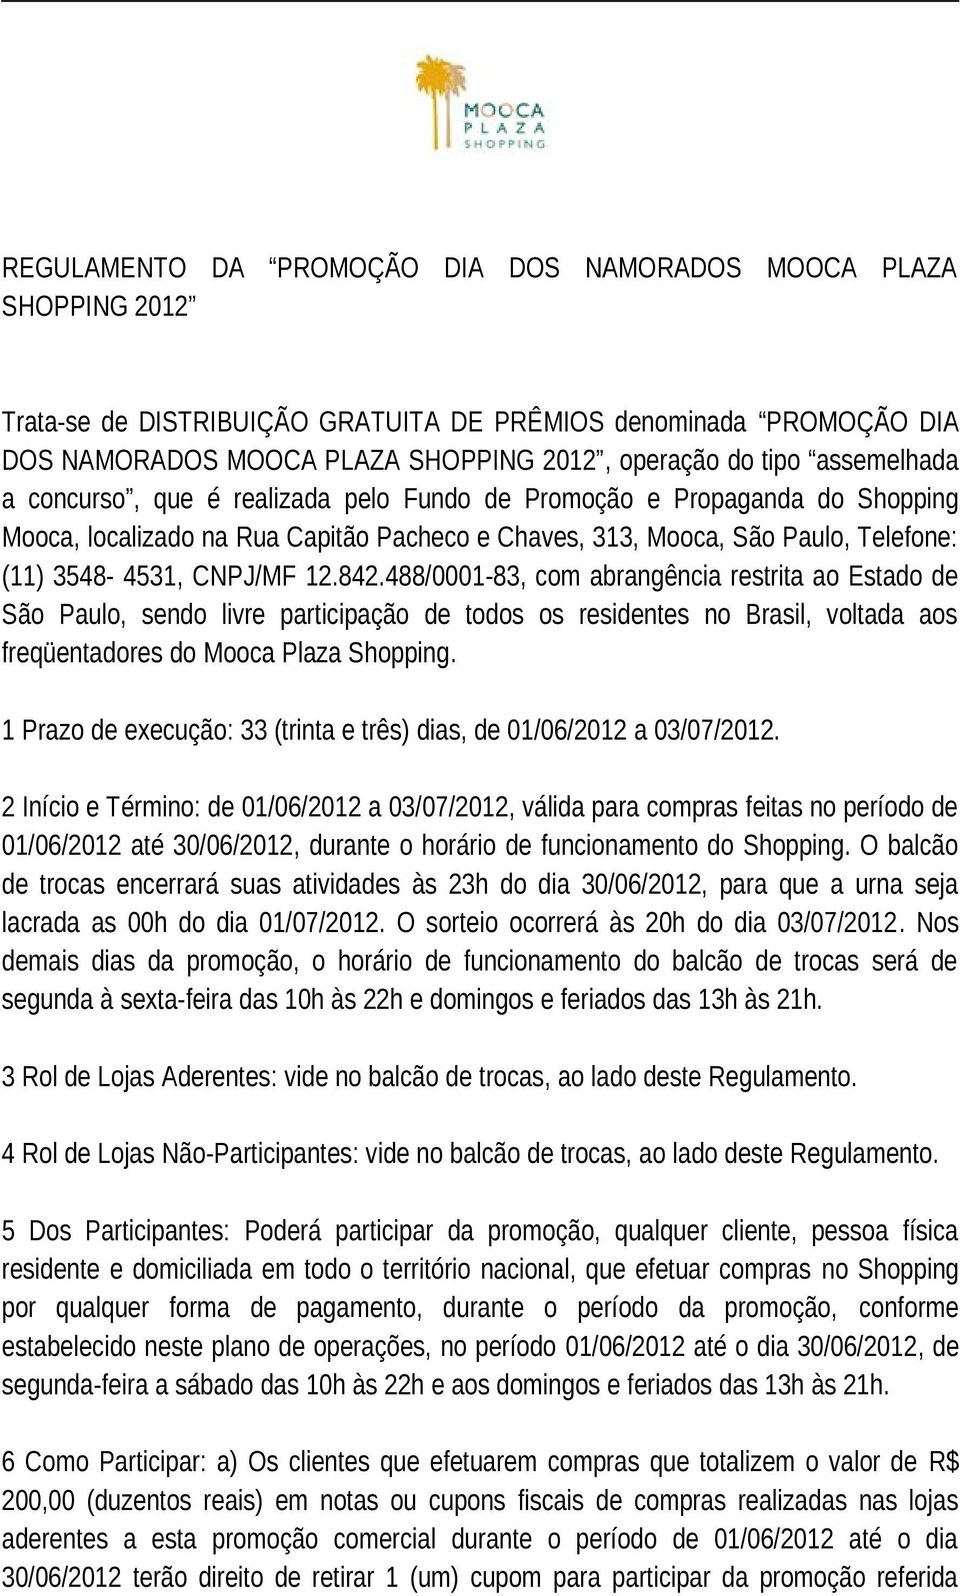 842.488/0001-83, com abrangência restrita ao Estado de São Paulo, sendo livre participação de todos os residentes no Brasil, voltada aos freqüentadores do Mooca Plaza Shopping.